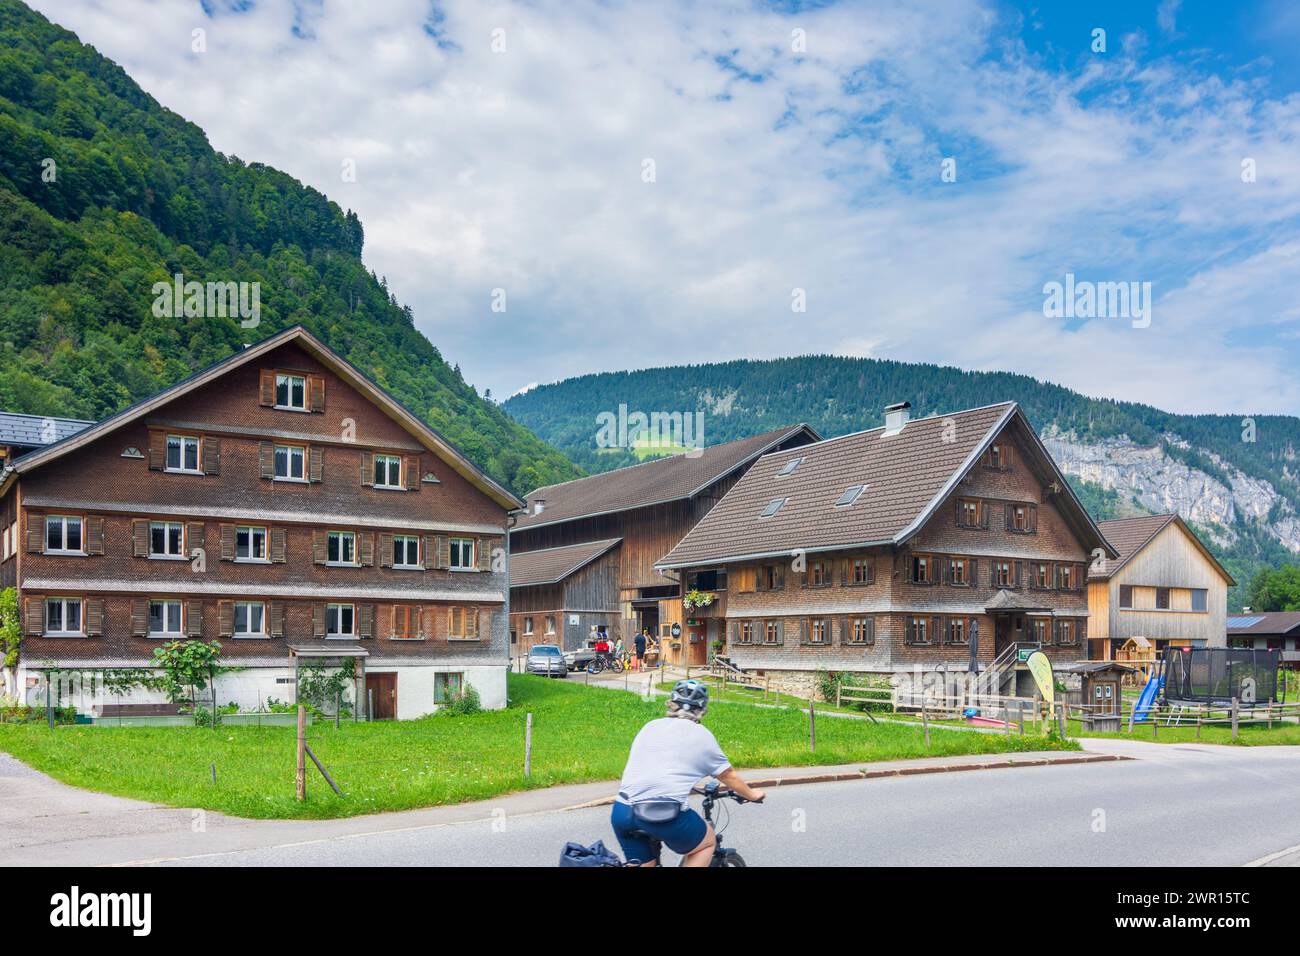 Mellau: historic houses with wooden paneling in Bregenzerwald (Bregenz Forest), Vorarlberg, Austria Stock Photo